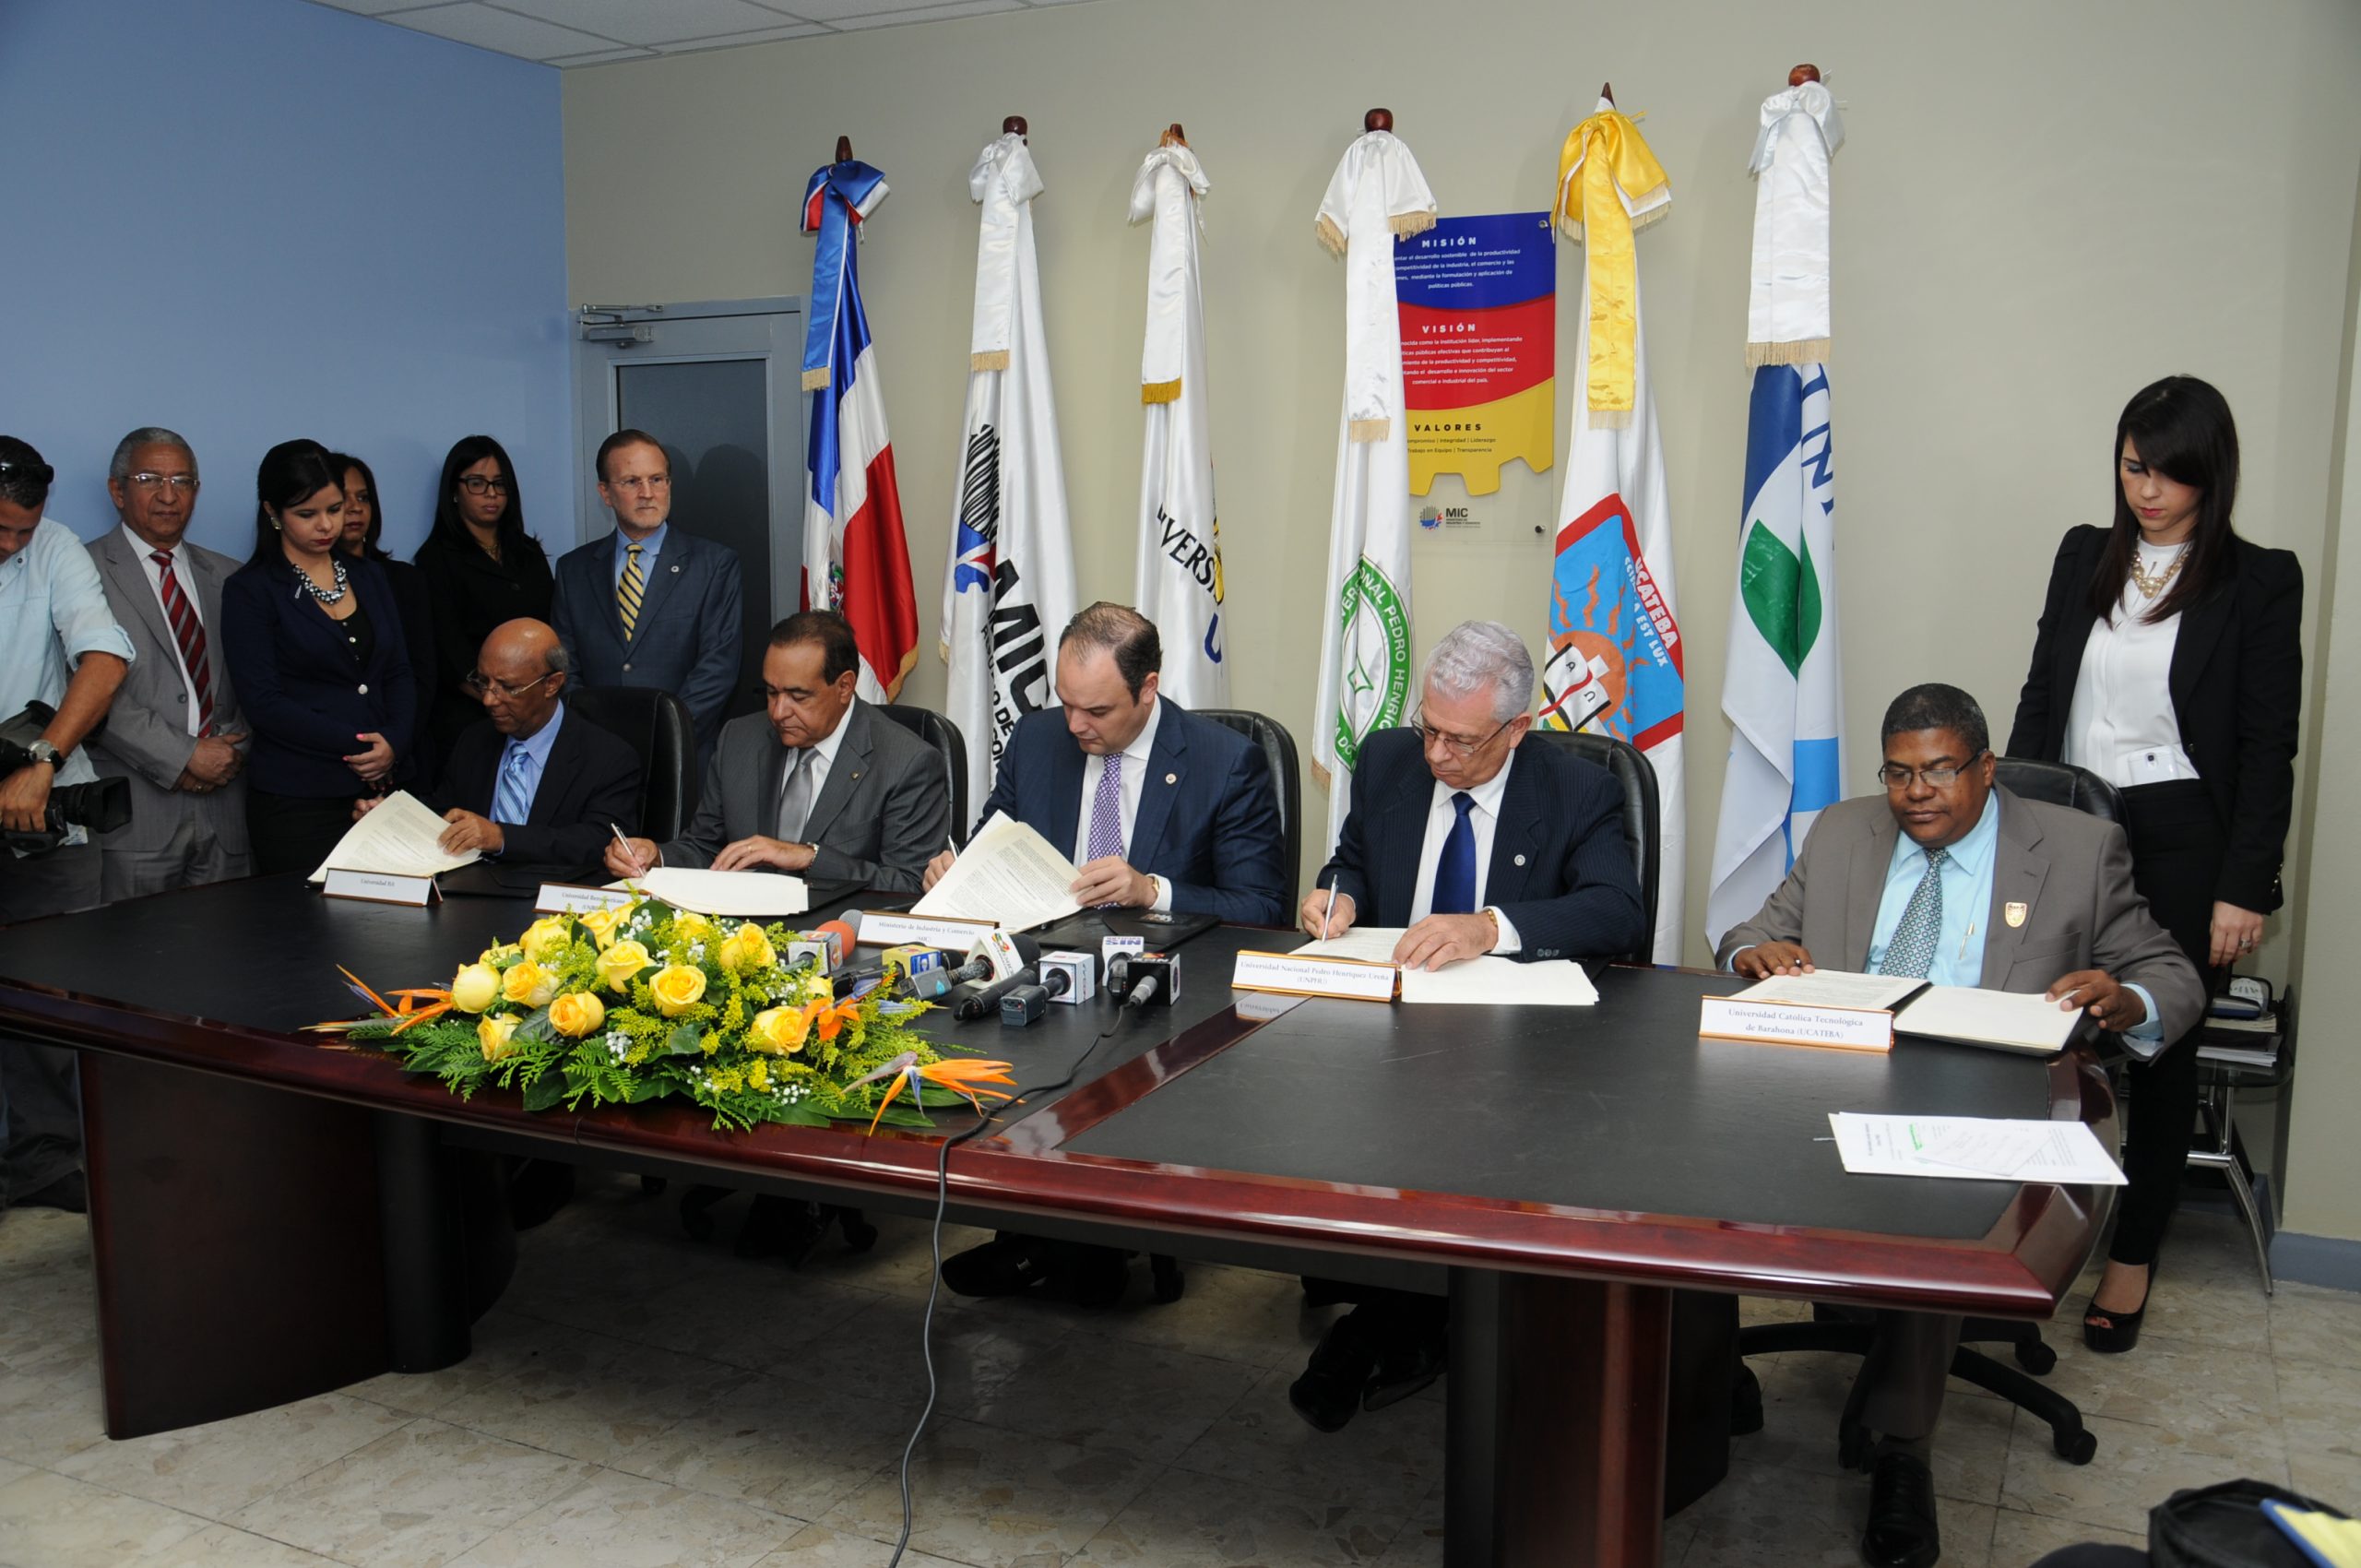 El acuerdo para los Centros Pymes fue firmado por el ministro de Industria y Comercio, José del Castillo Saviñón, con los representantes de las universidades.